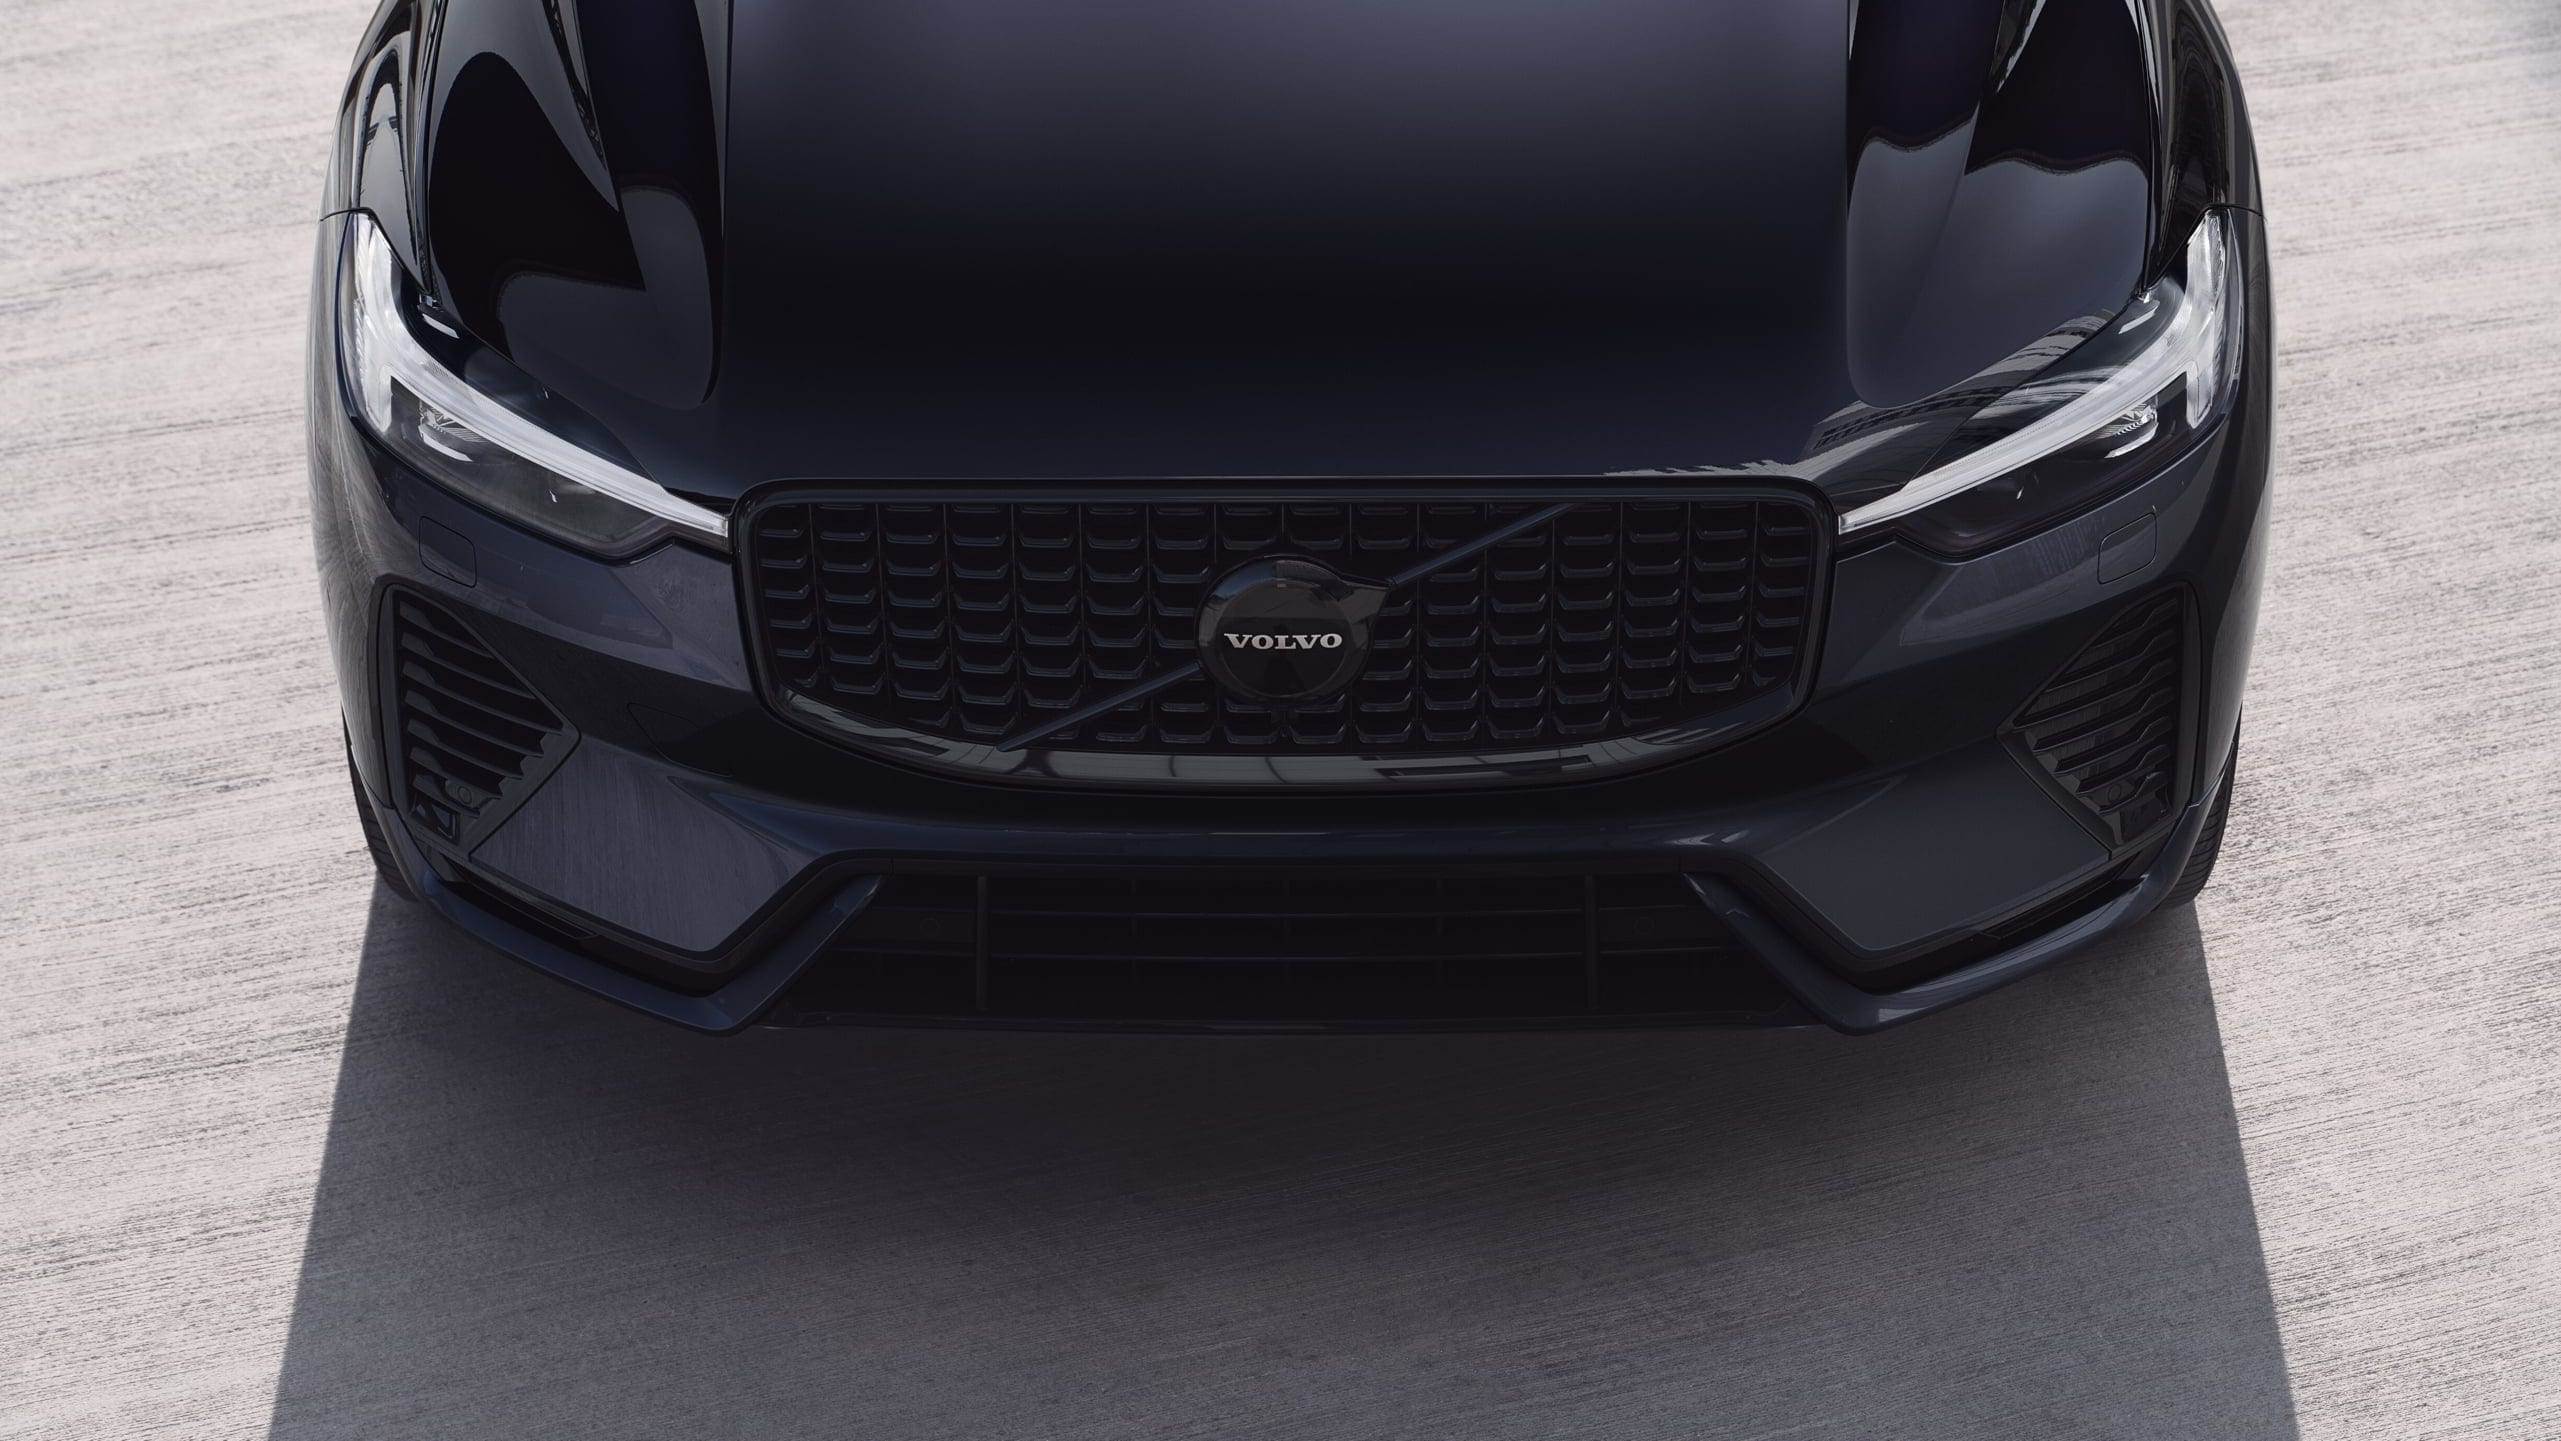 Volvo black edition